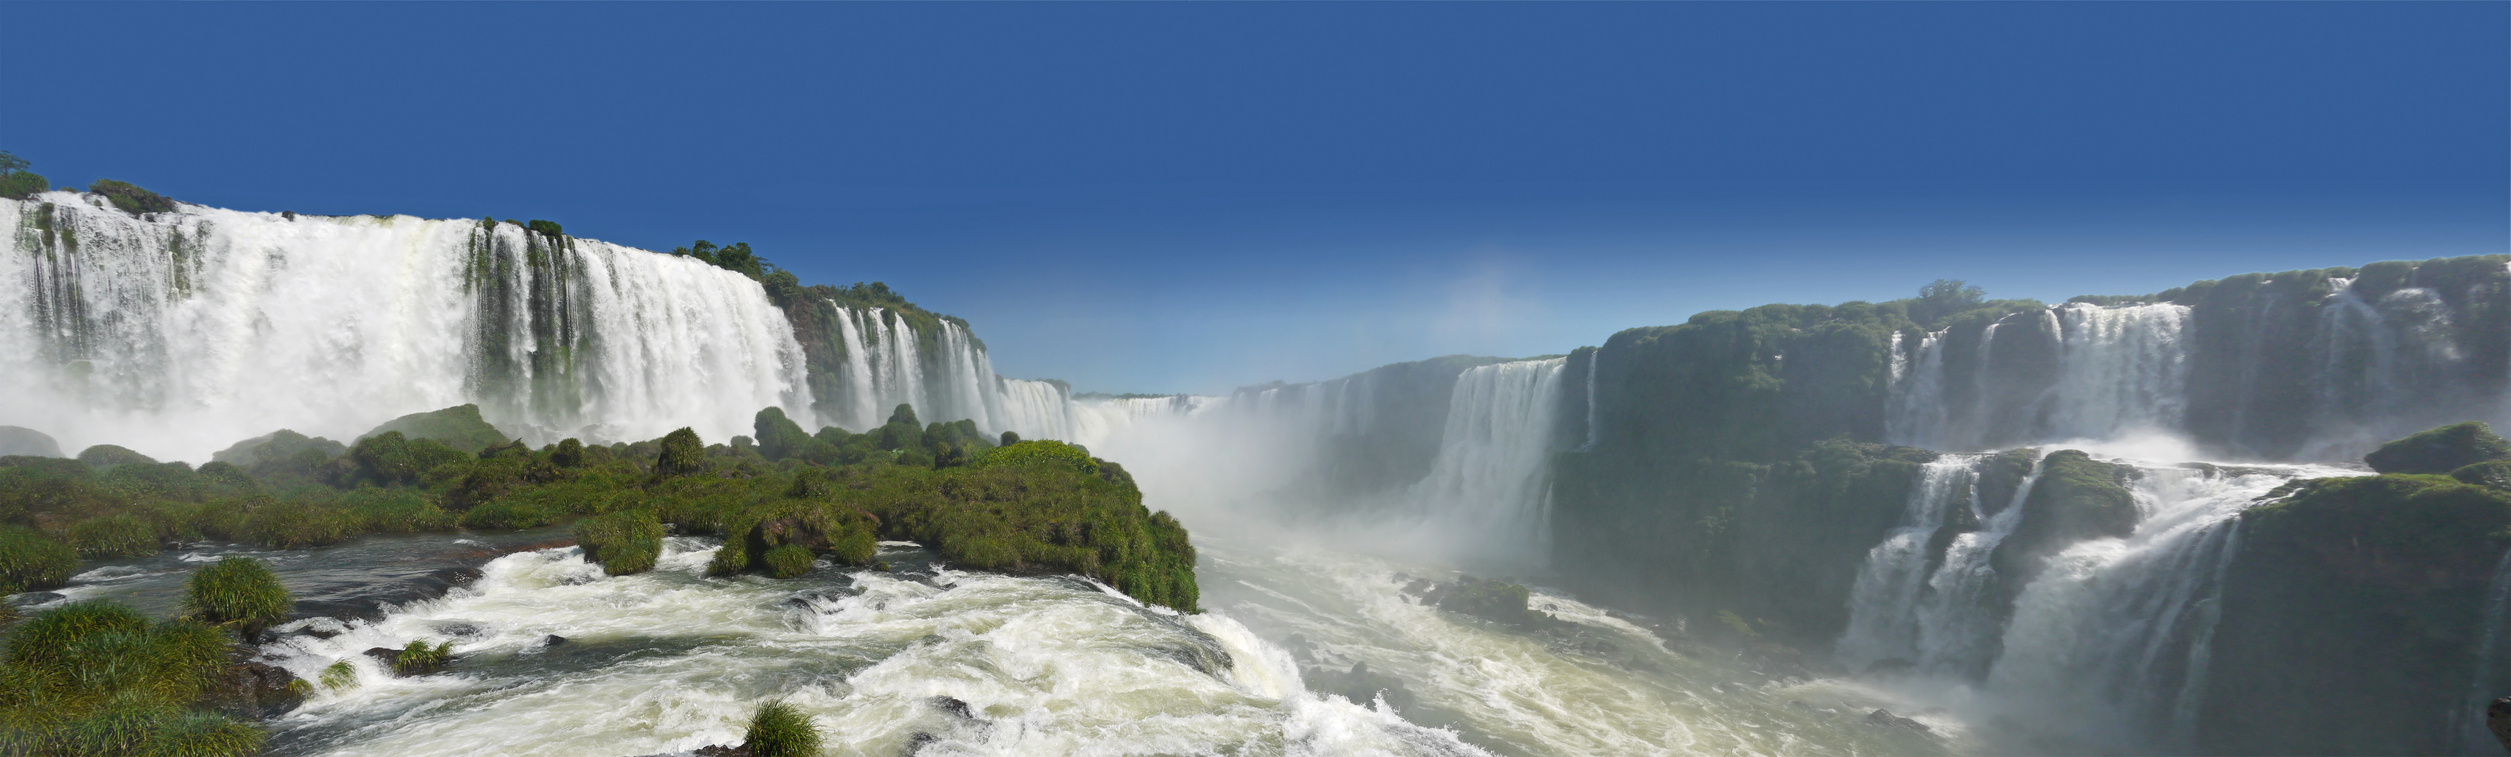 Iguazú-Wasserfälle, Brasilianische Seite